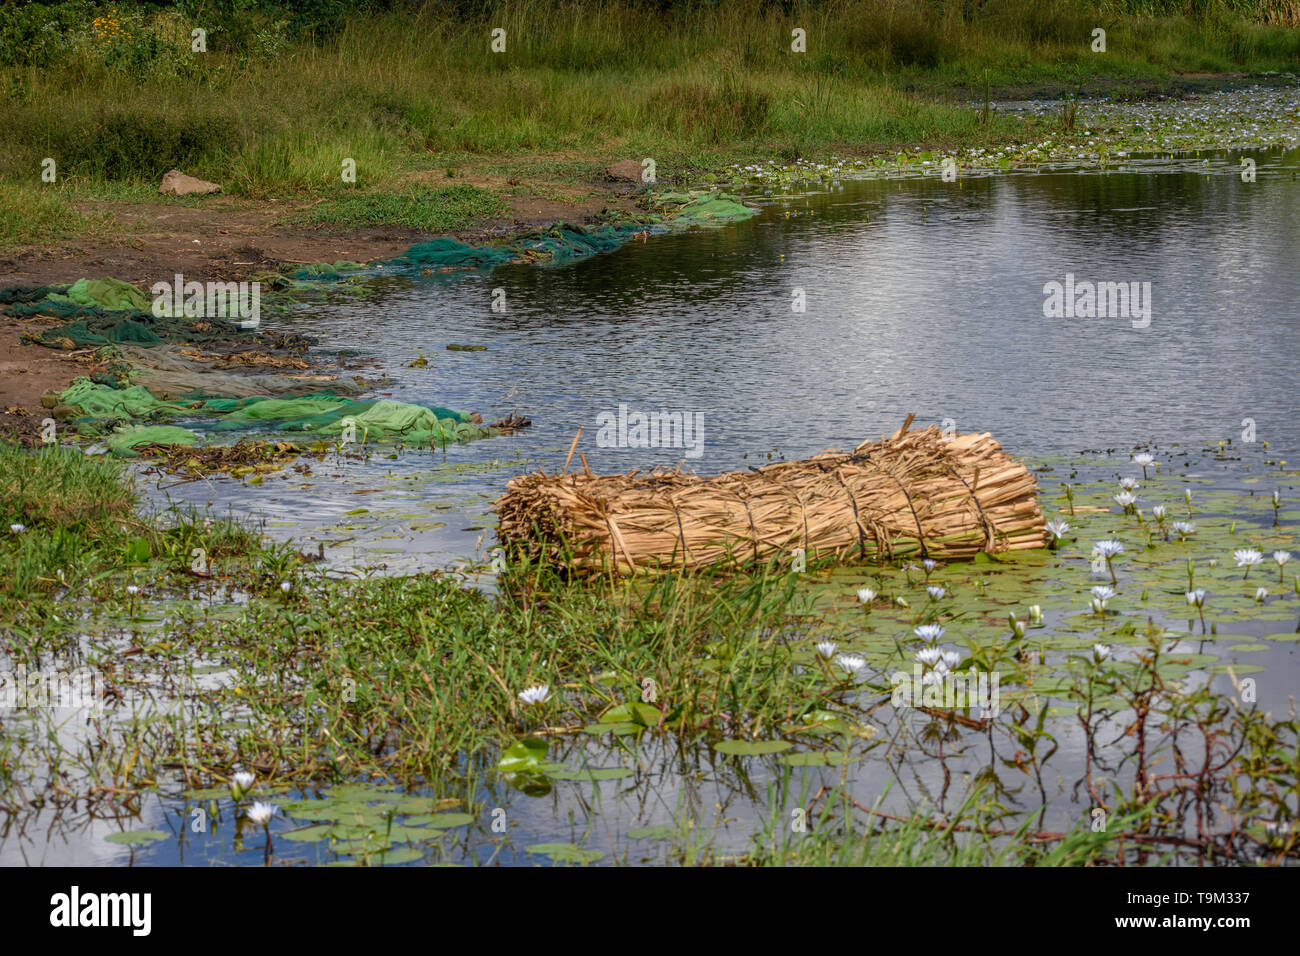 Una imagen de una balsa de fabricación casera en un lago en el borde de una aldea de Malawi la balsa de totora atados juntos Foto de stock